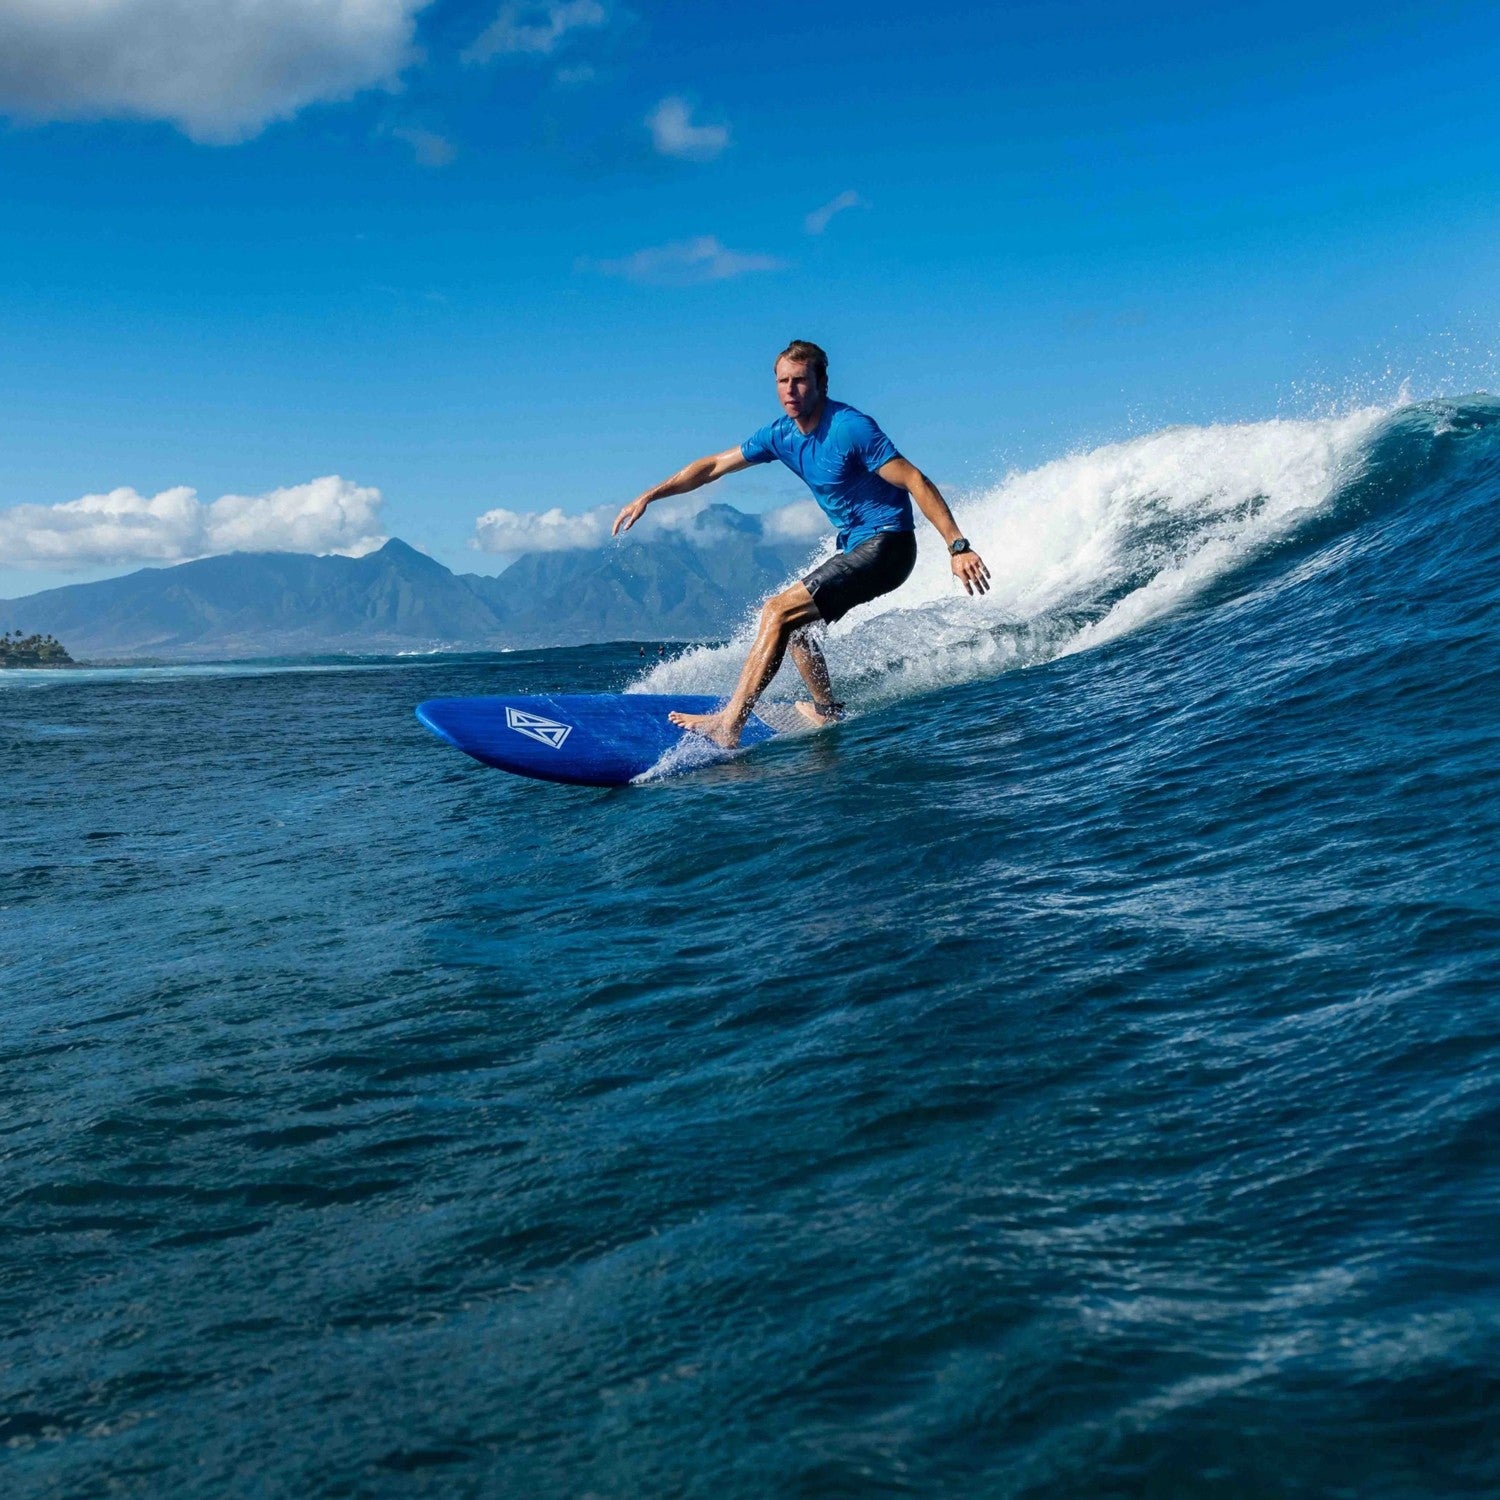 CBC - Planche de Surf en Mousse Scott Burke - Softboard 8'0 - Navy Blue